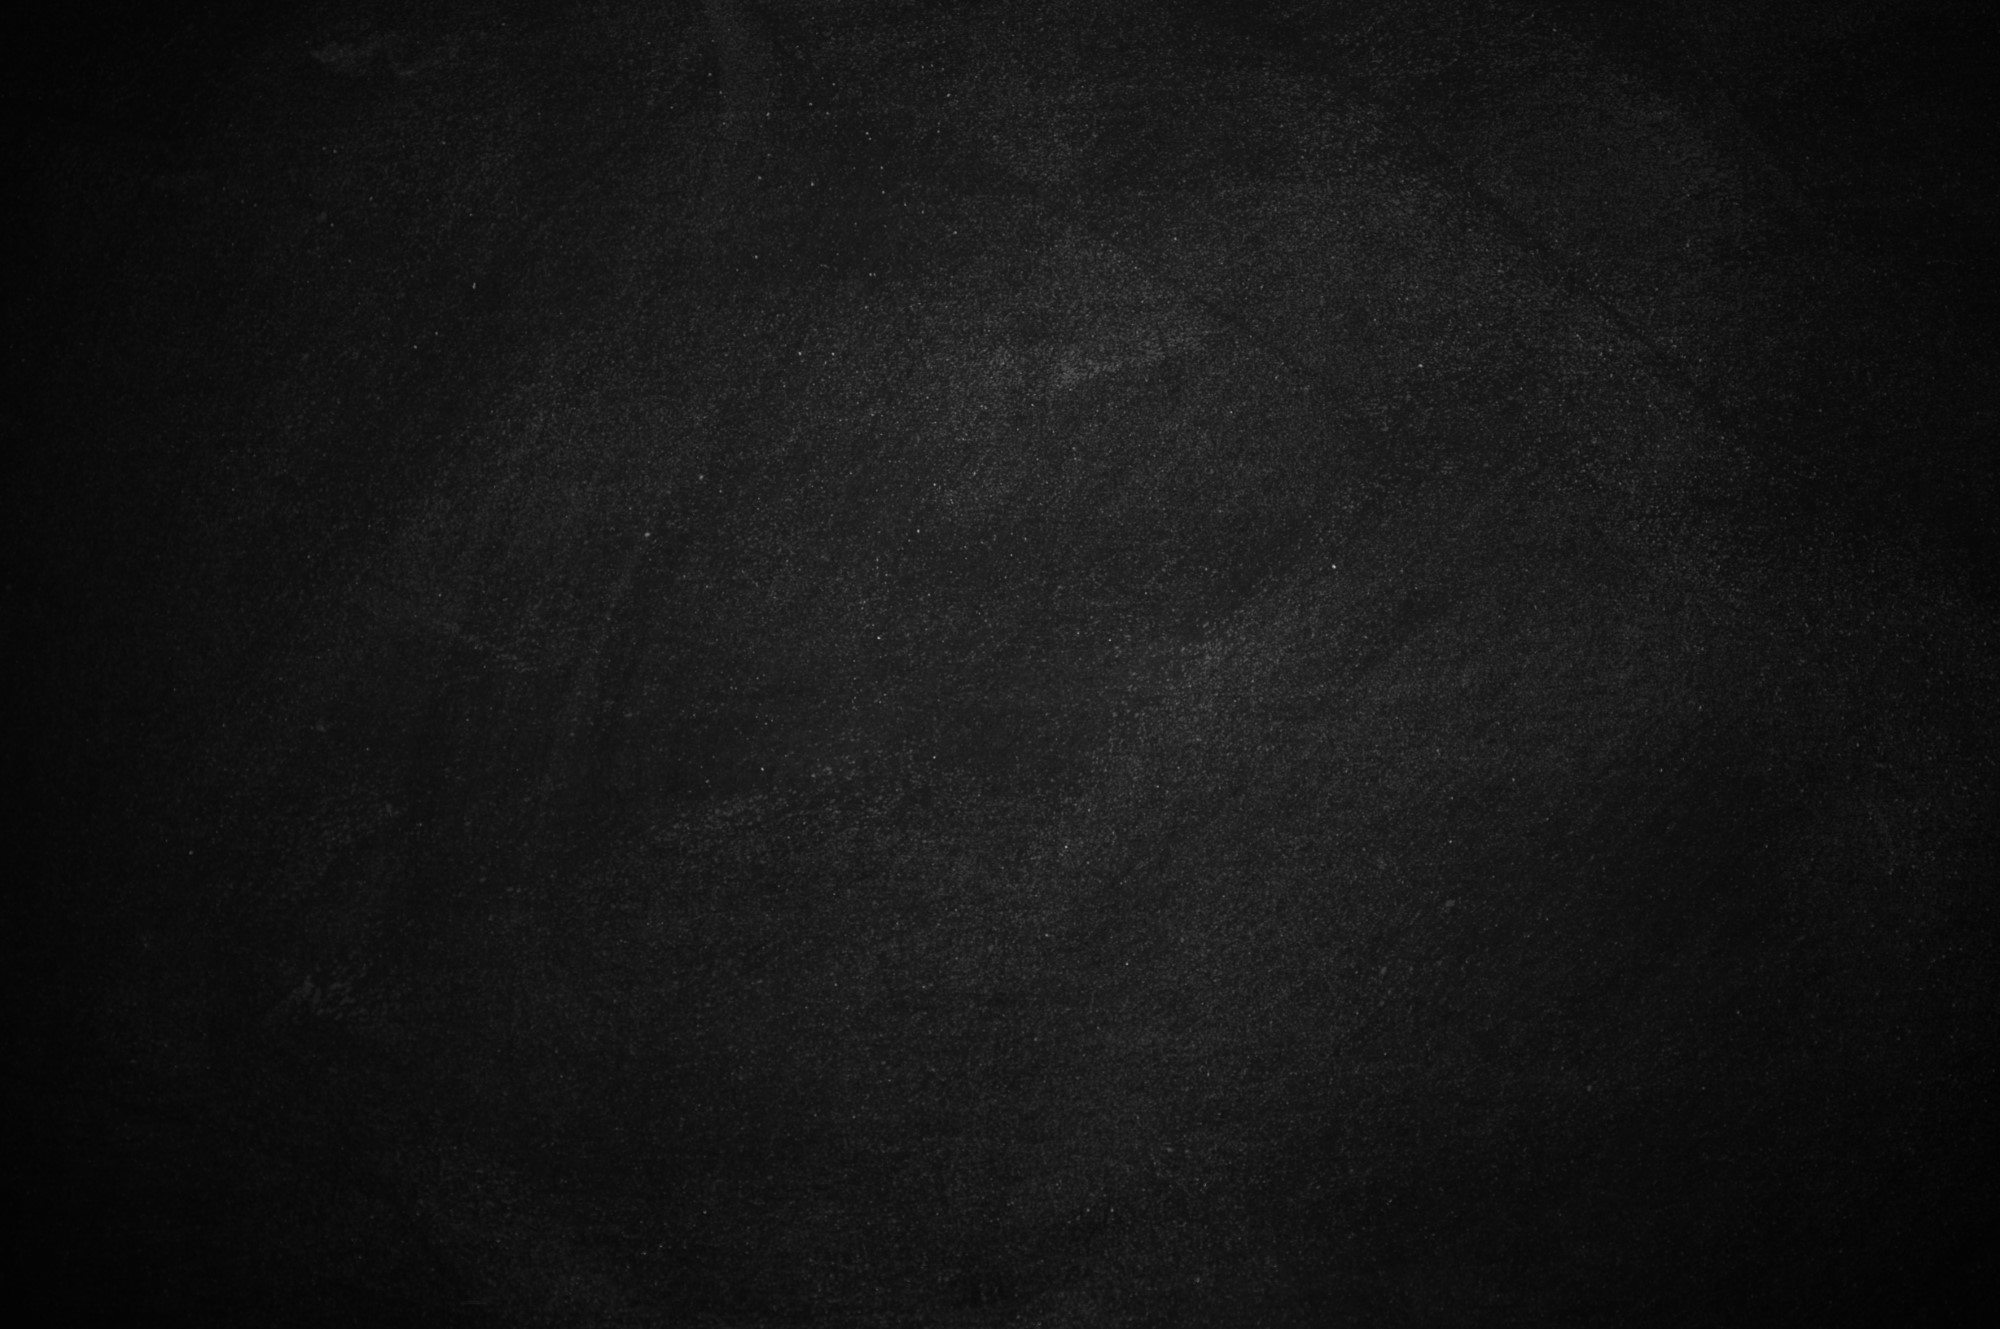 chalkboard and blackboard, dark wallpaper background